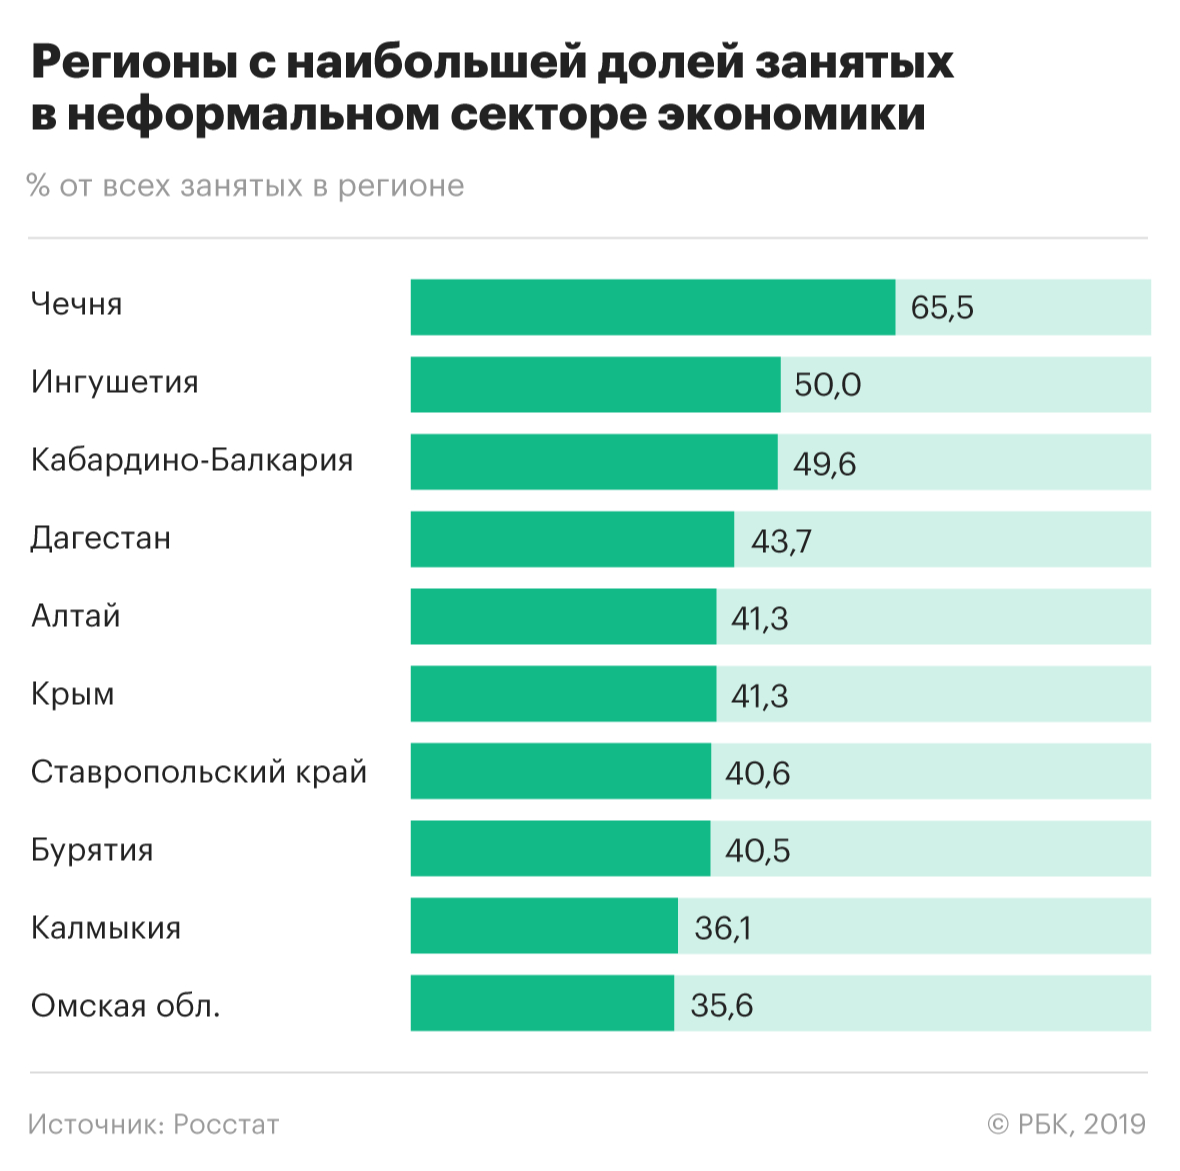 Количество занятых в россии. Численность работающих. Сколько работ в России. Численность работащих людей в Росси. Численность работающих в России.